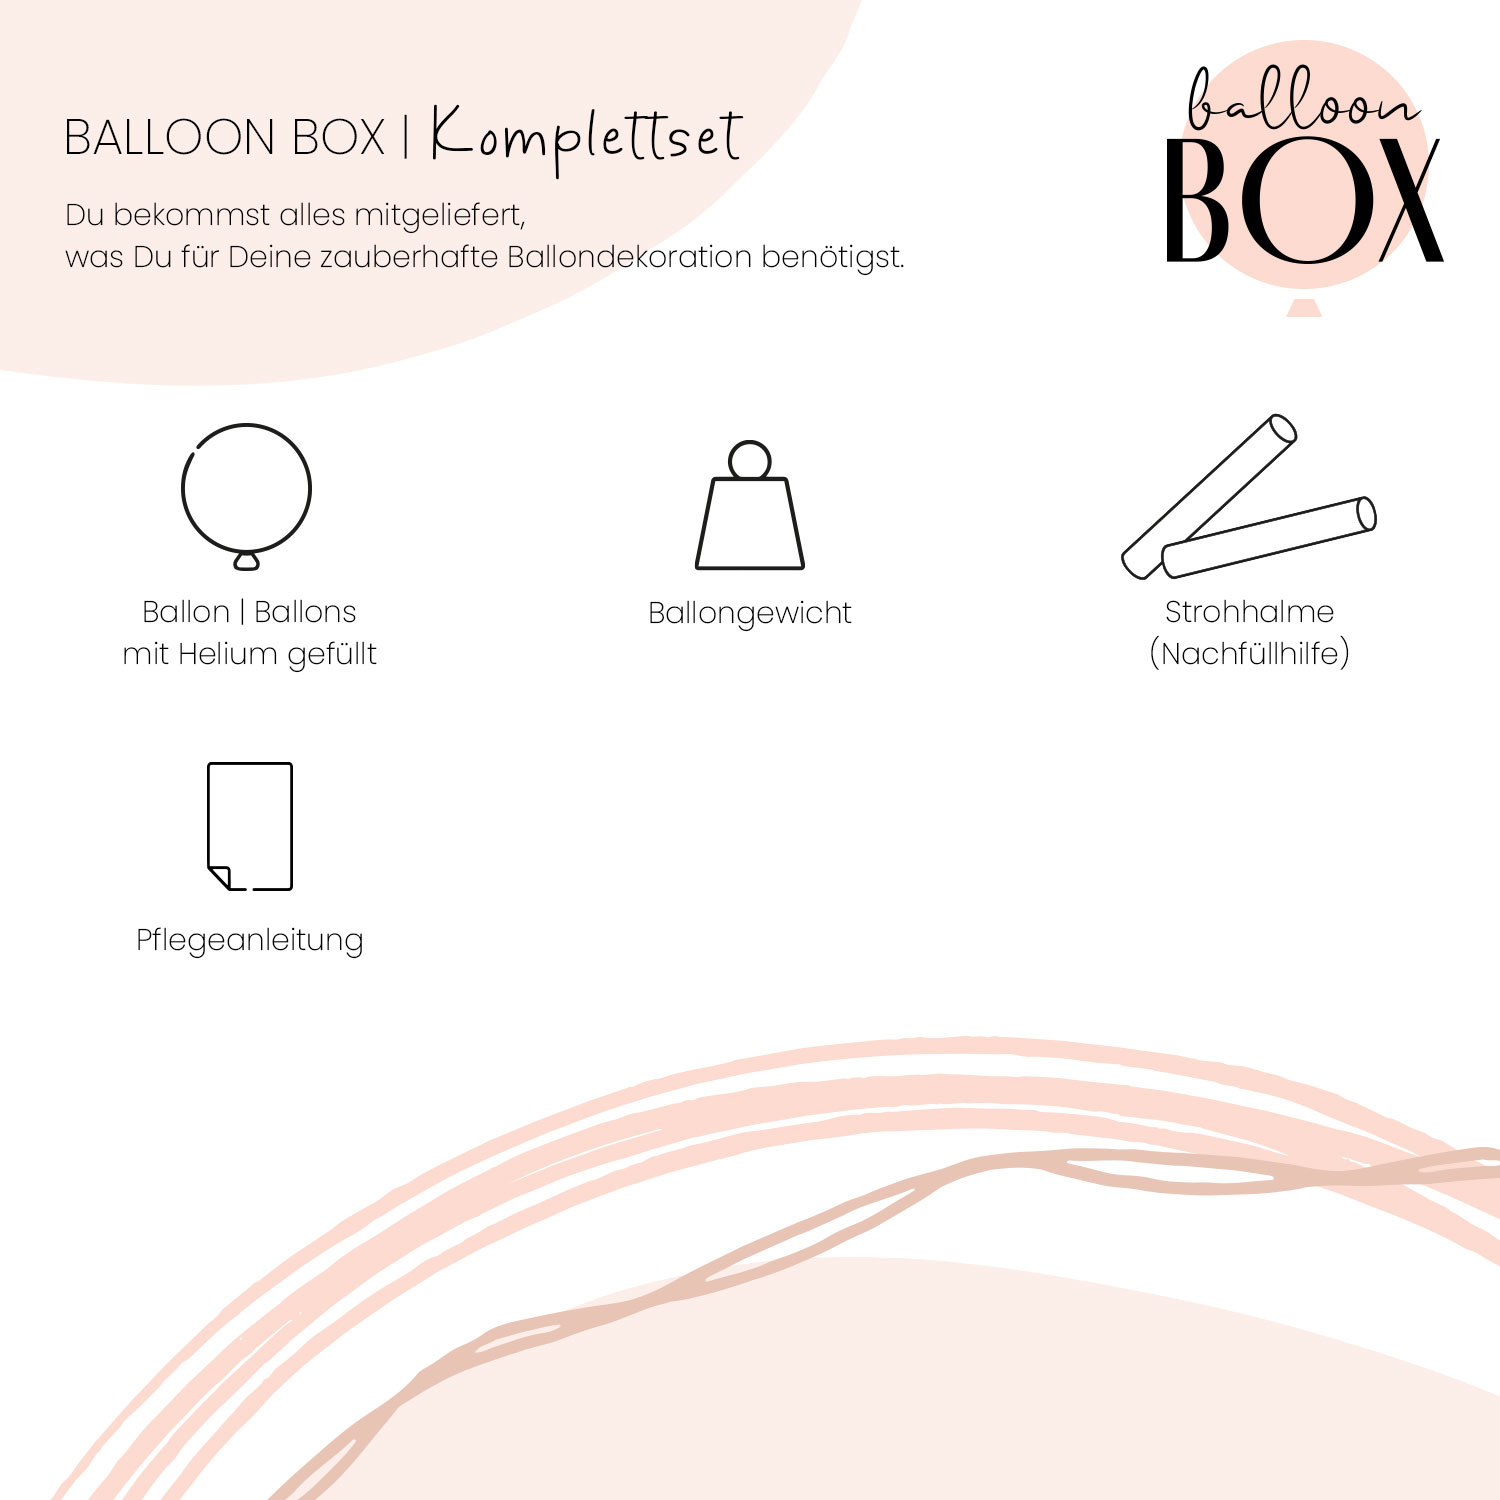 Personalisierter Ballon in a Box - I Love You